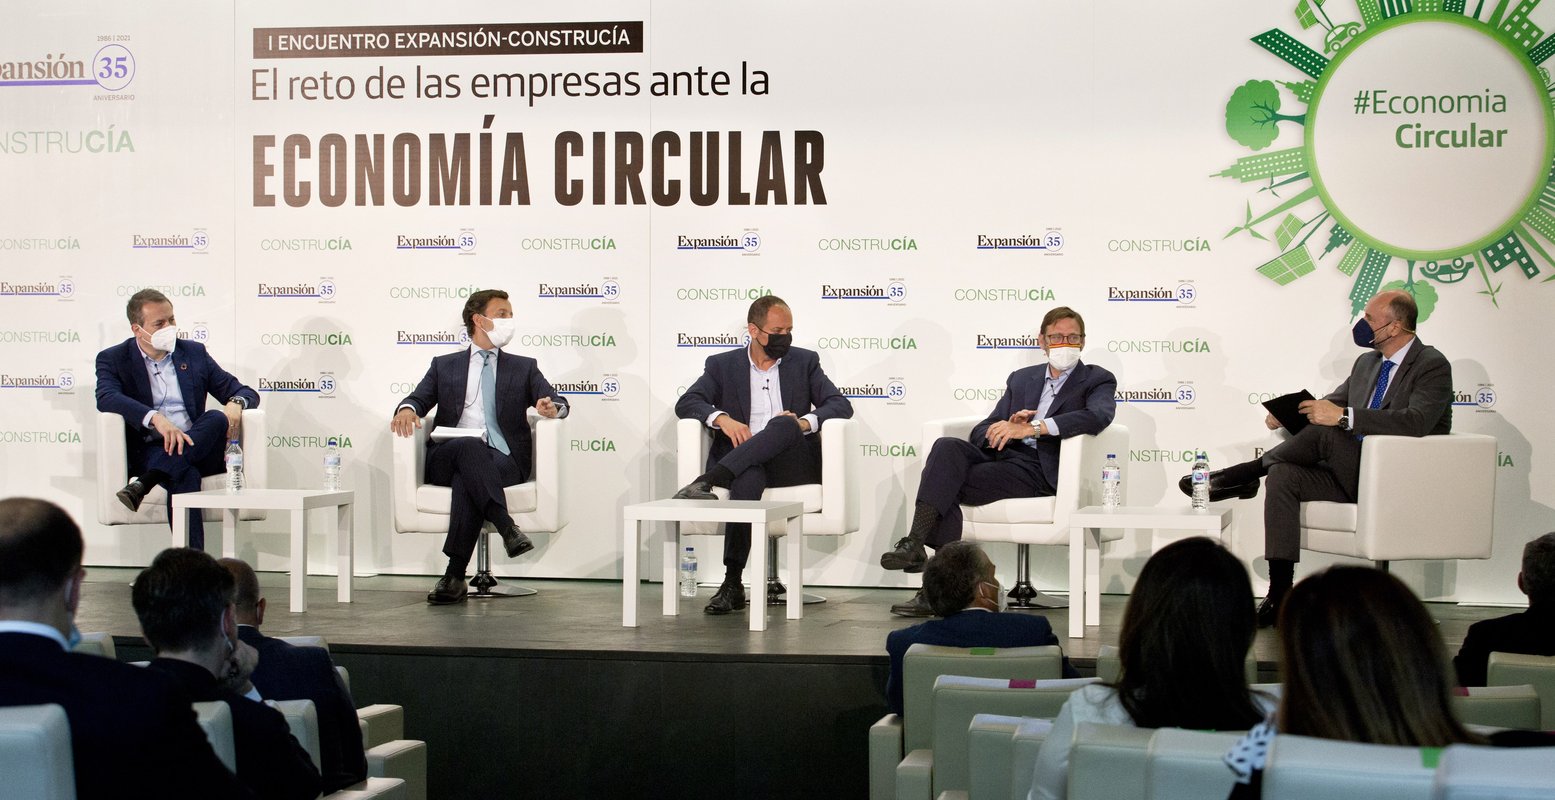 Fórum Construcía: A economia circular como estratégia empresarial